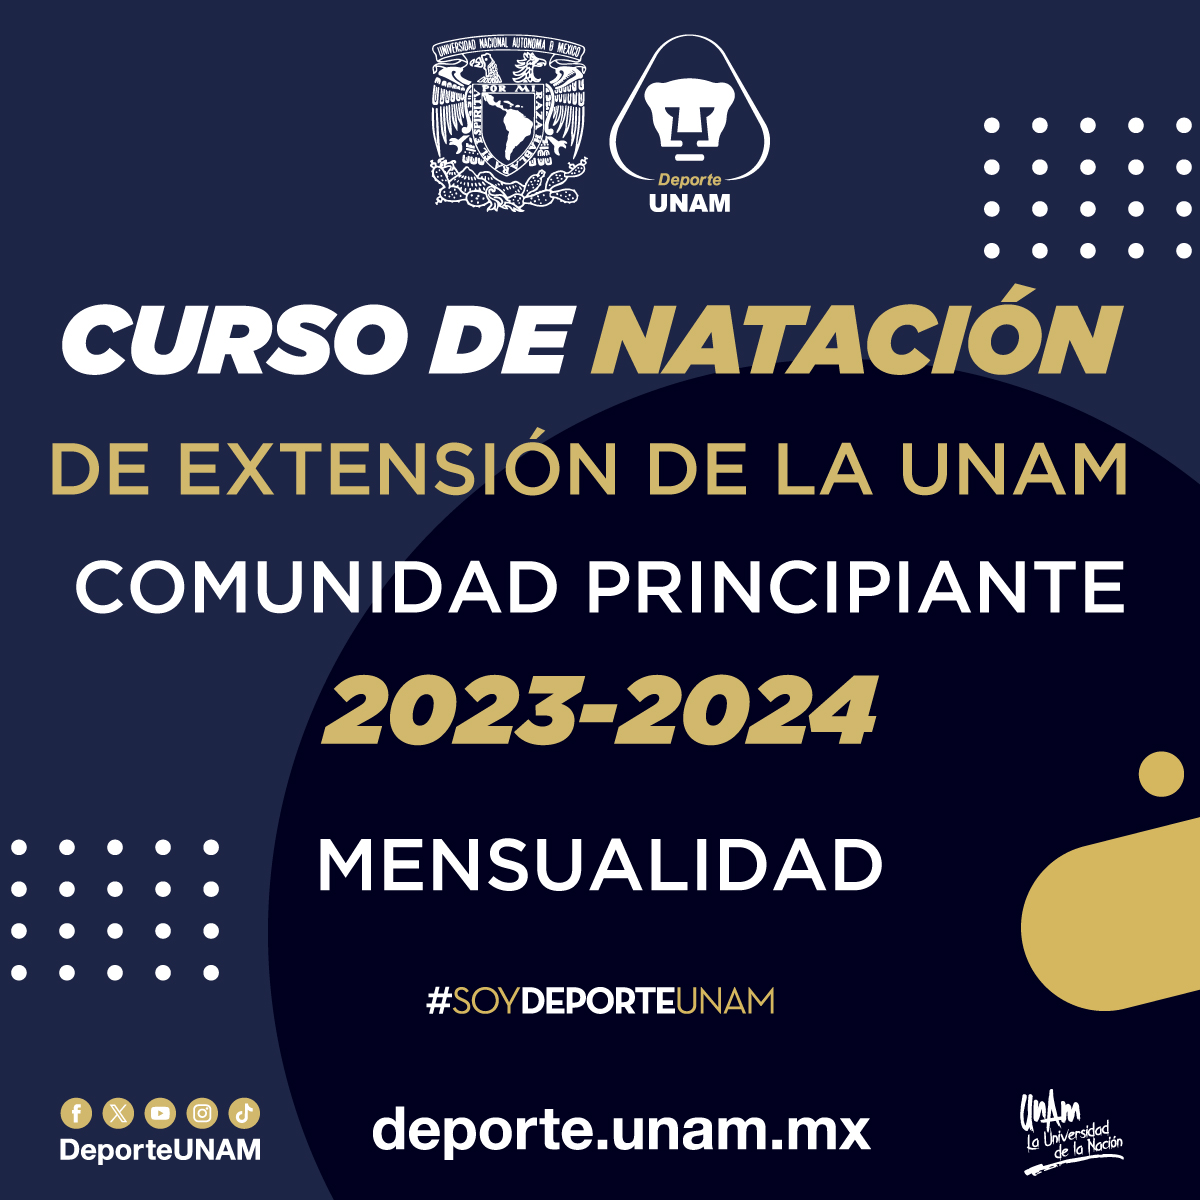 CURSO DE NATACIÓN DE EXTENSIÓN DE LA UNAM 2023 - 2024 COMUNIDAD PRINCIPIANTE MENSUALIDAD